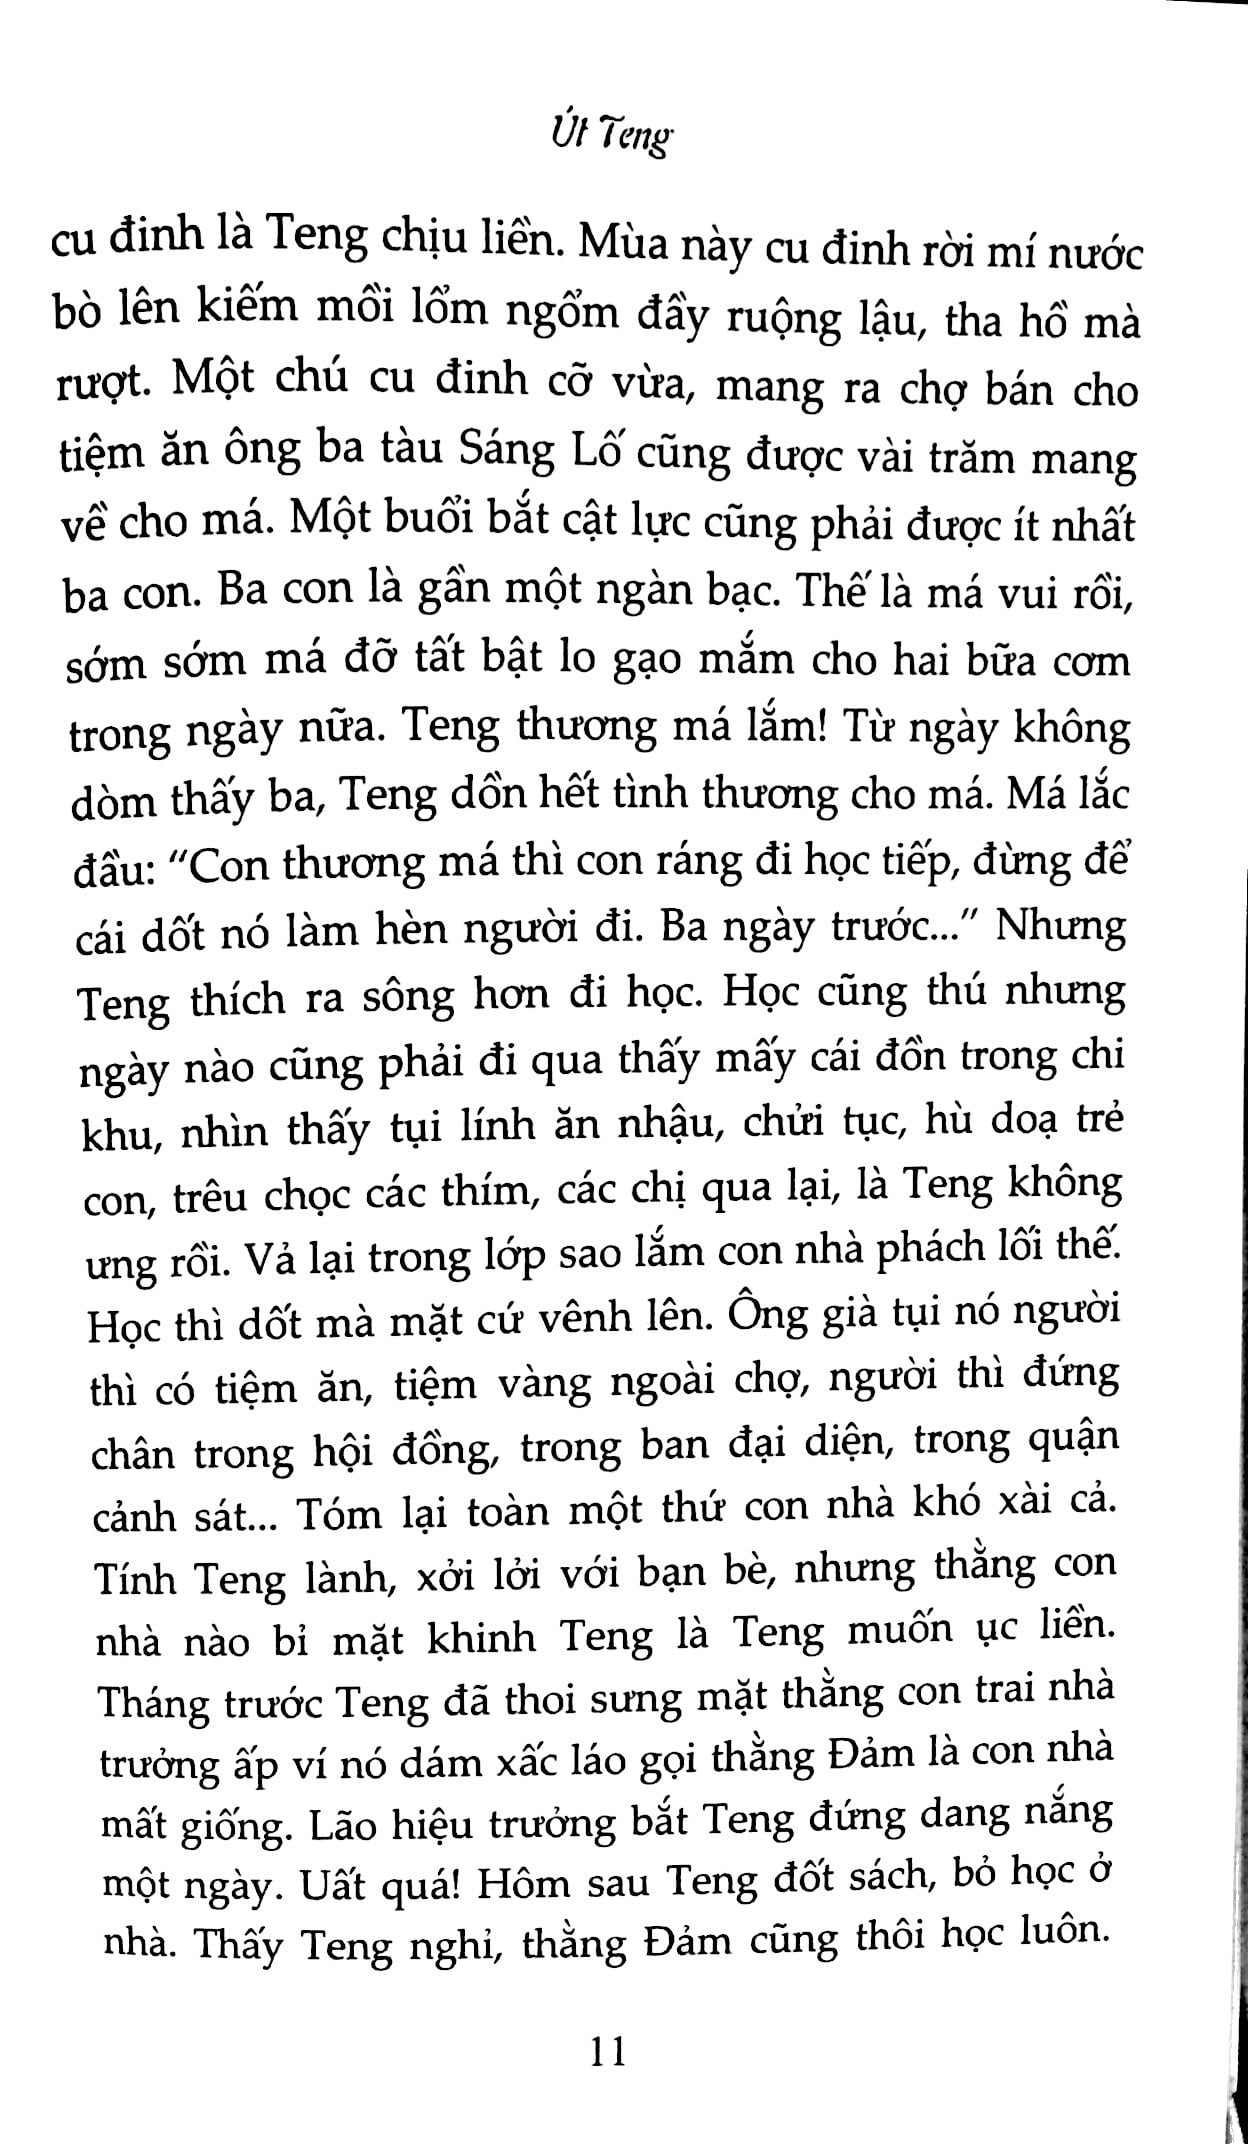 Chu Lai - Út Teng PDF